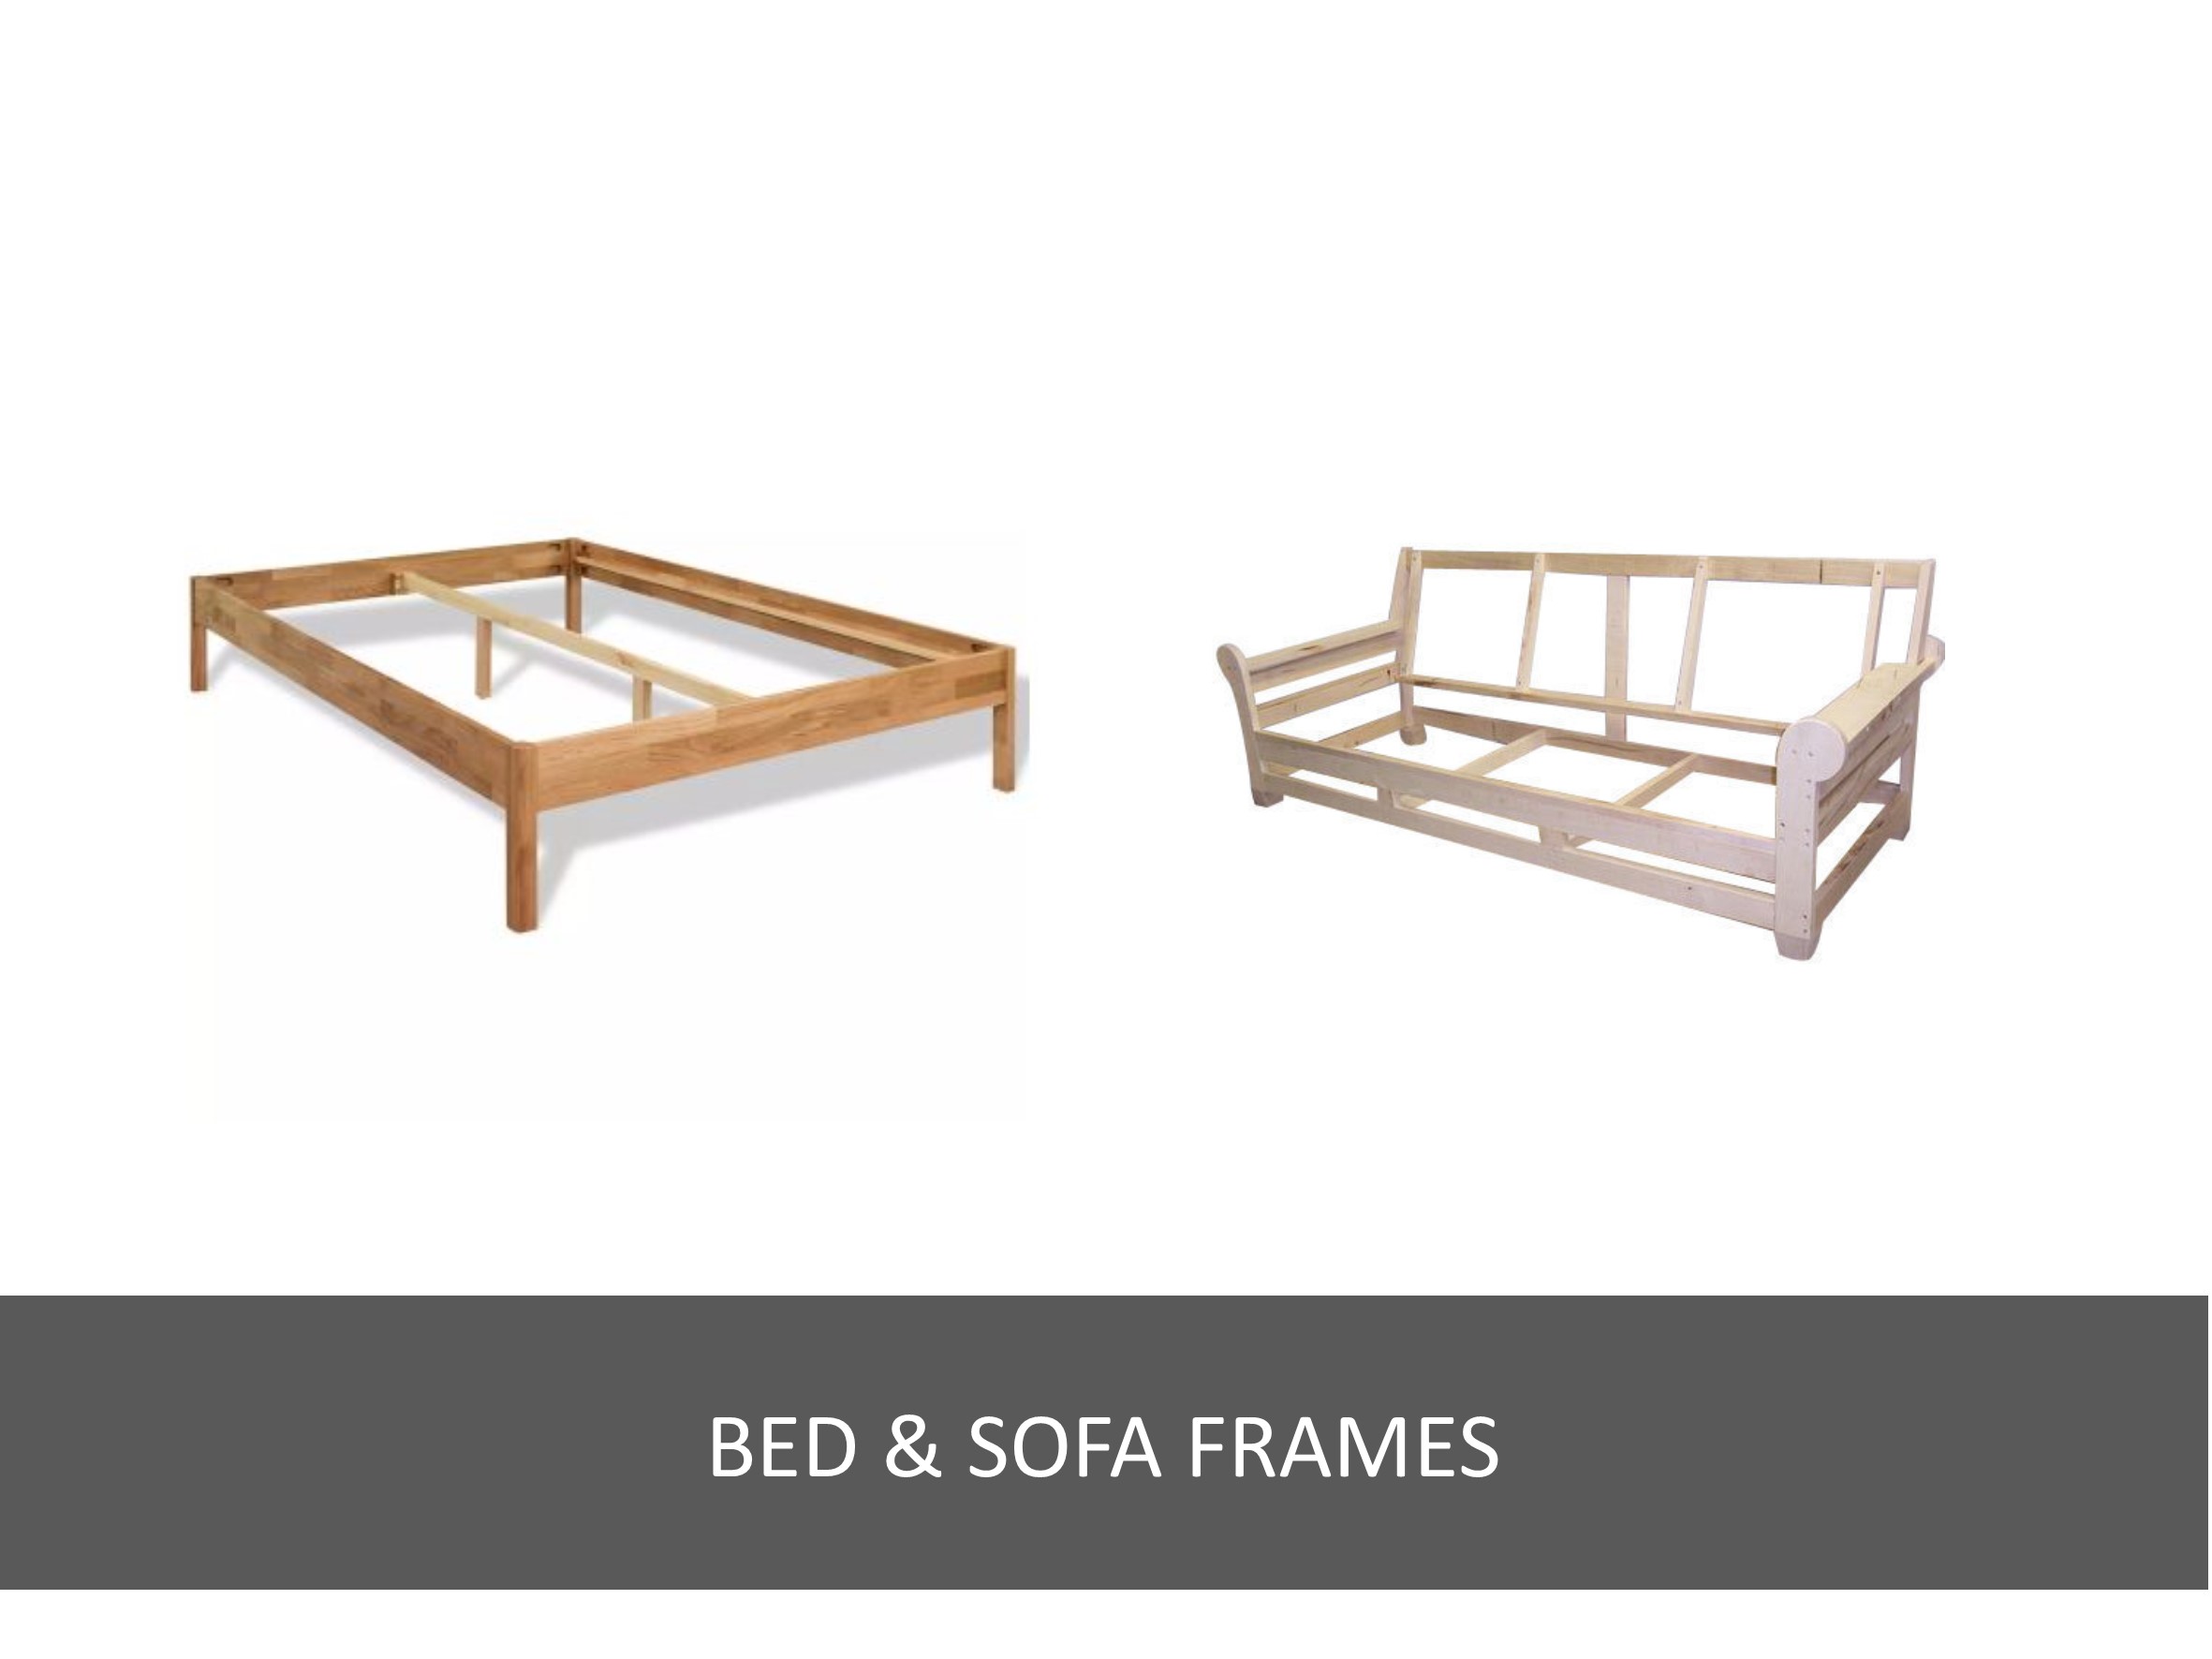 Bed & sofa frames